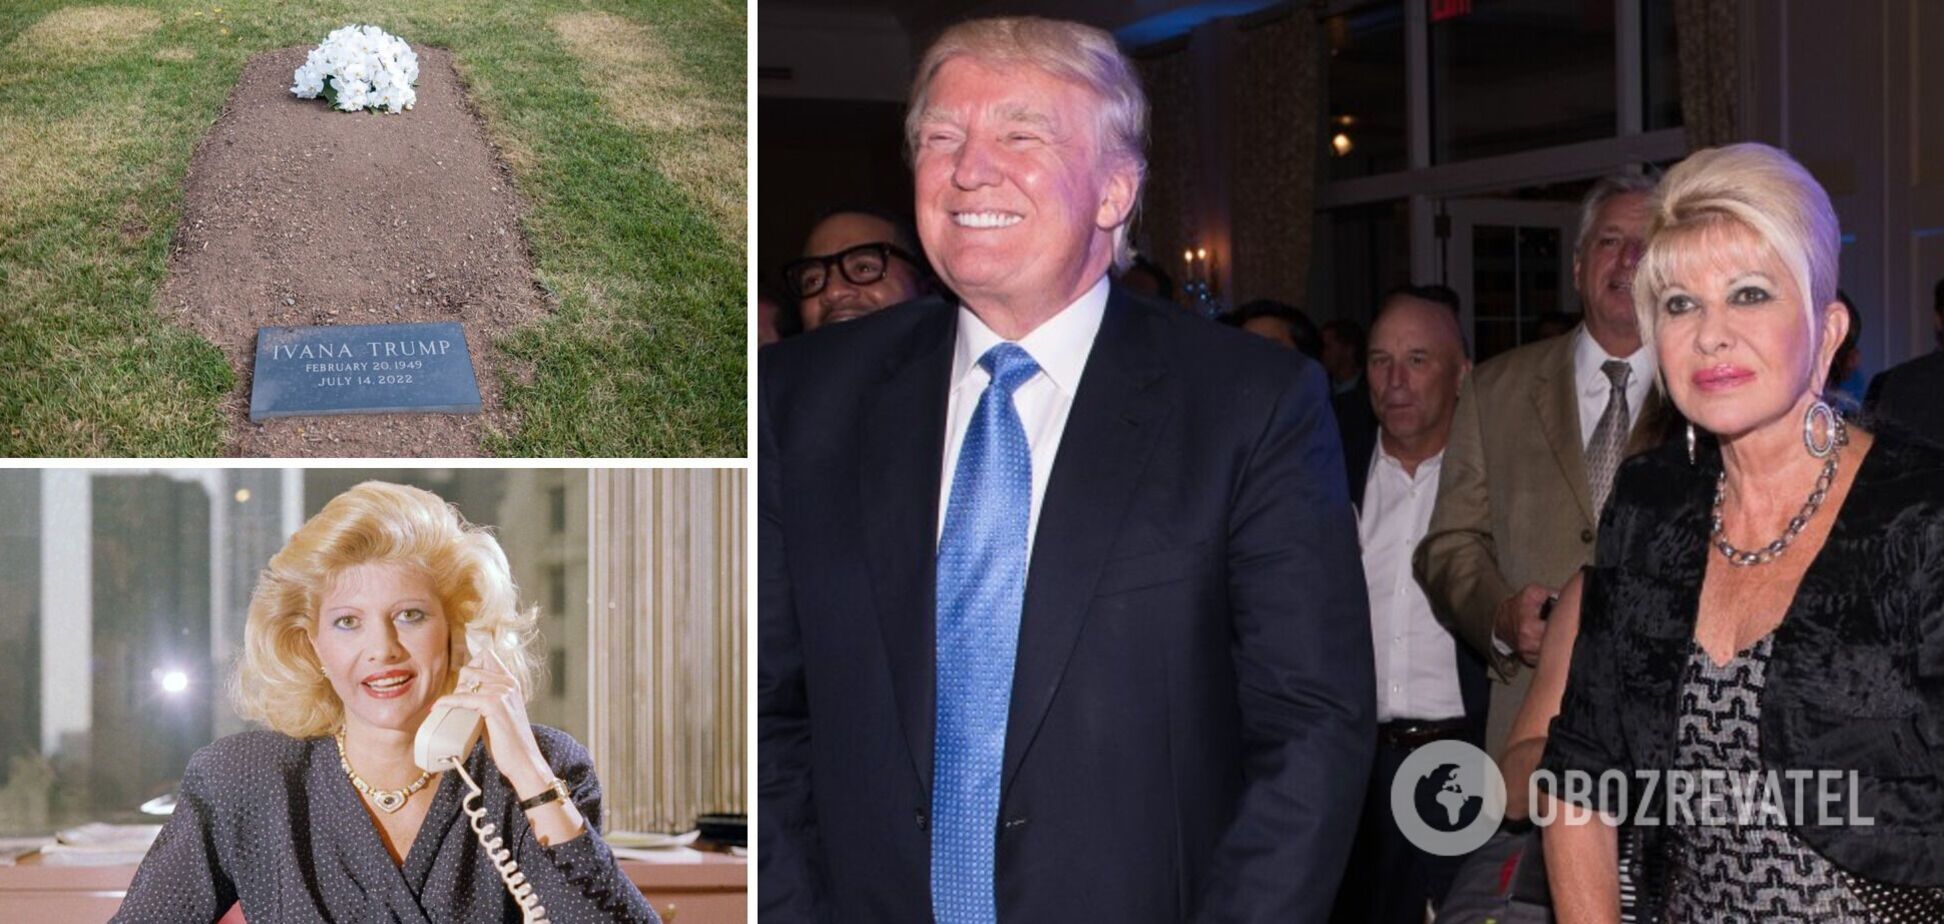 Трампа обвинили в том, что он похоронил экс-жену на территории гольф-клуба не просто так